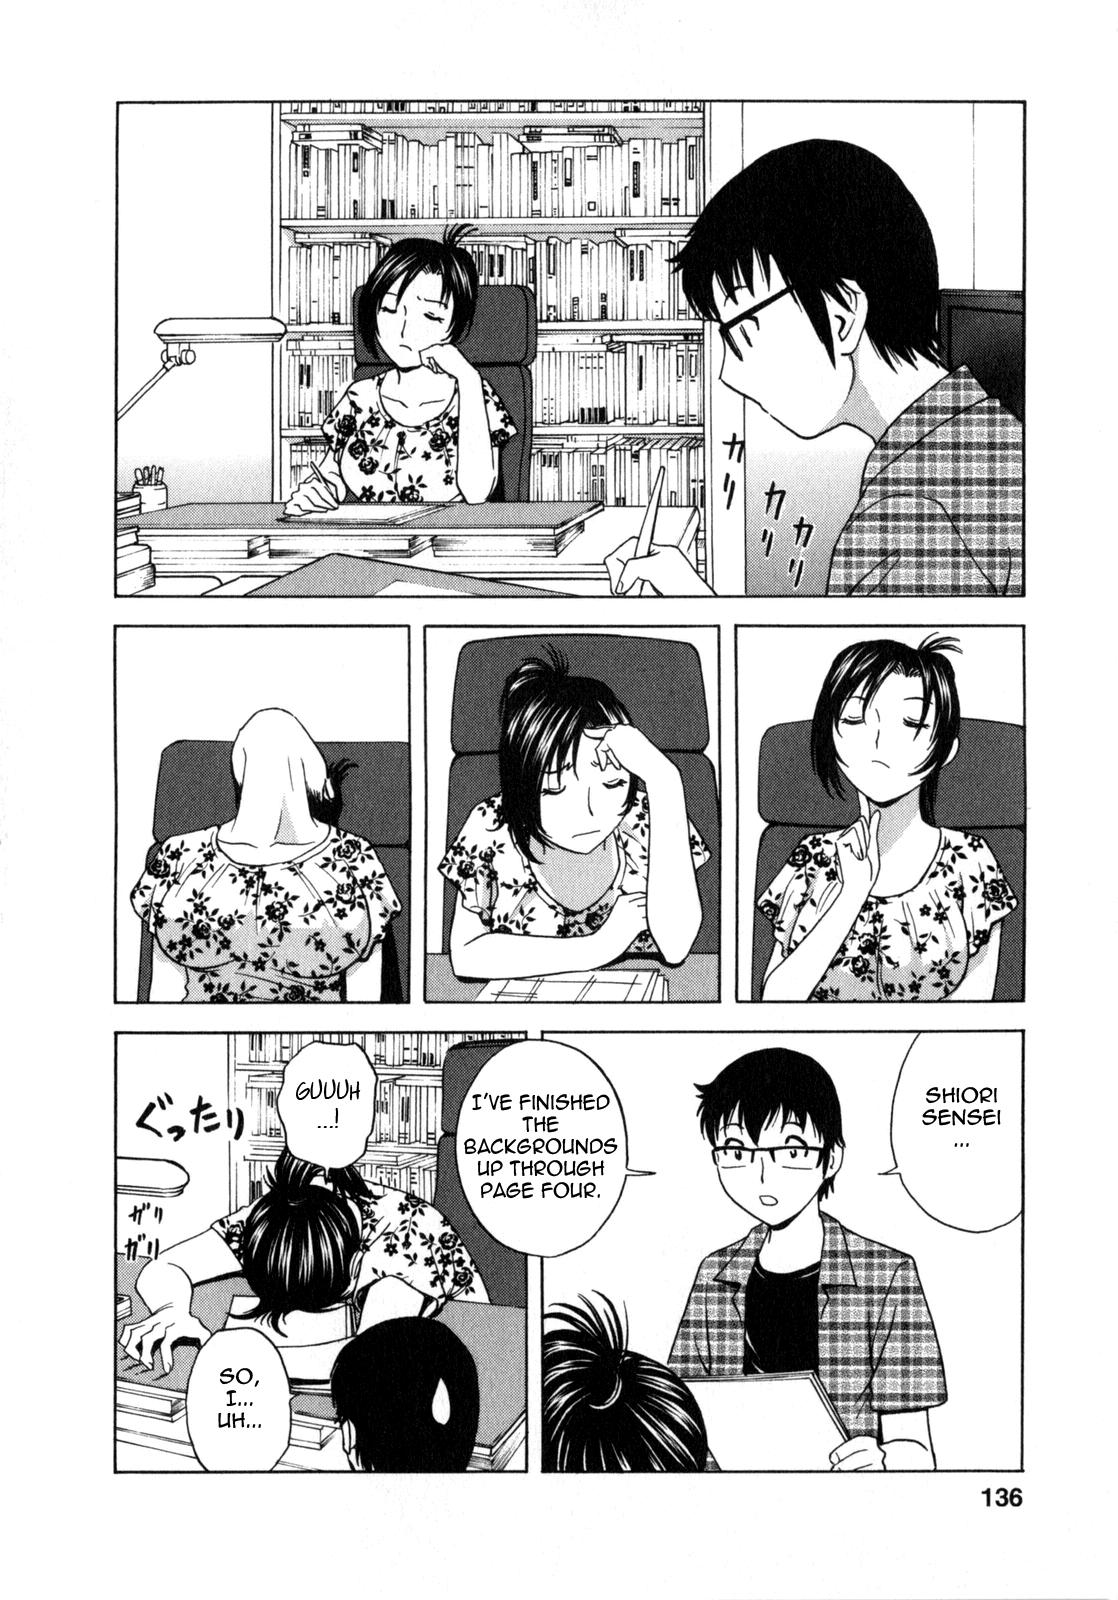 Manga no youna Hitozuma to no Hibi - Days with Married Women such as Comics. 136